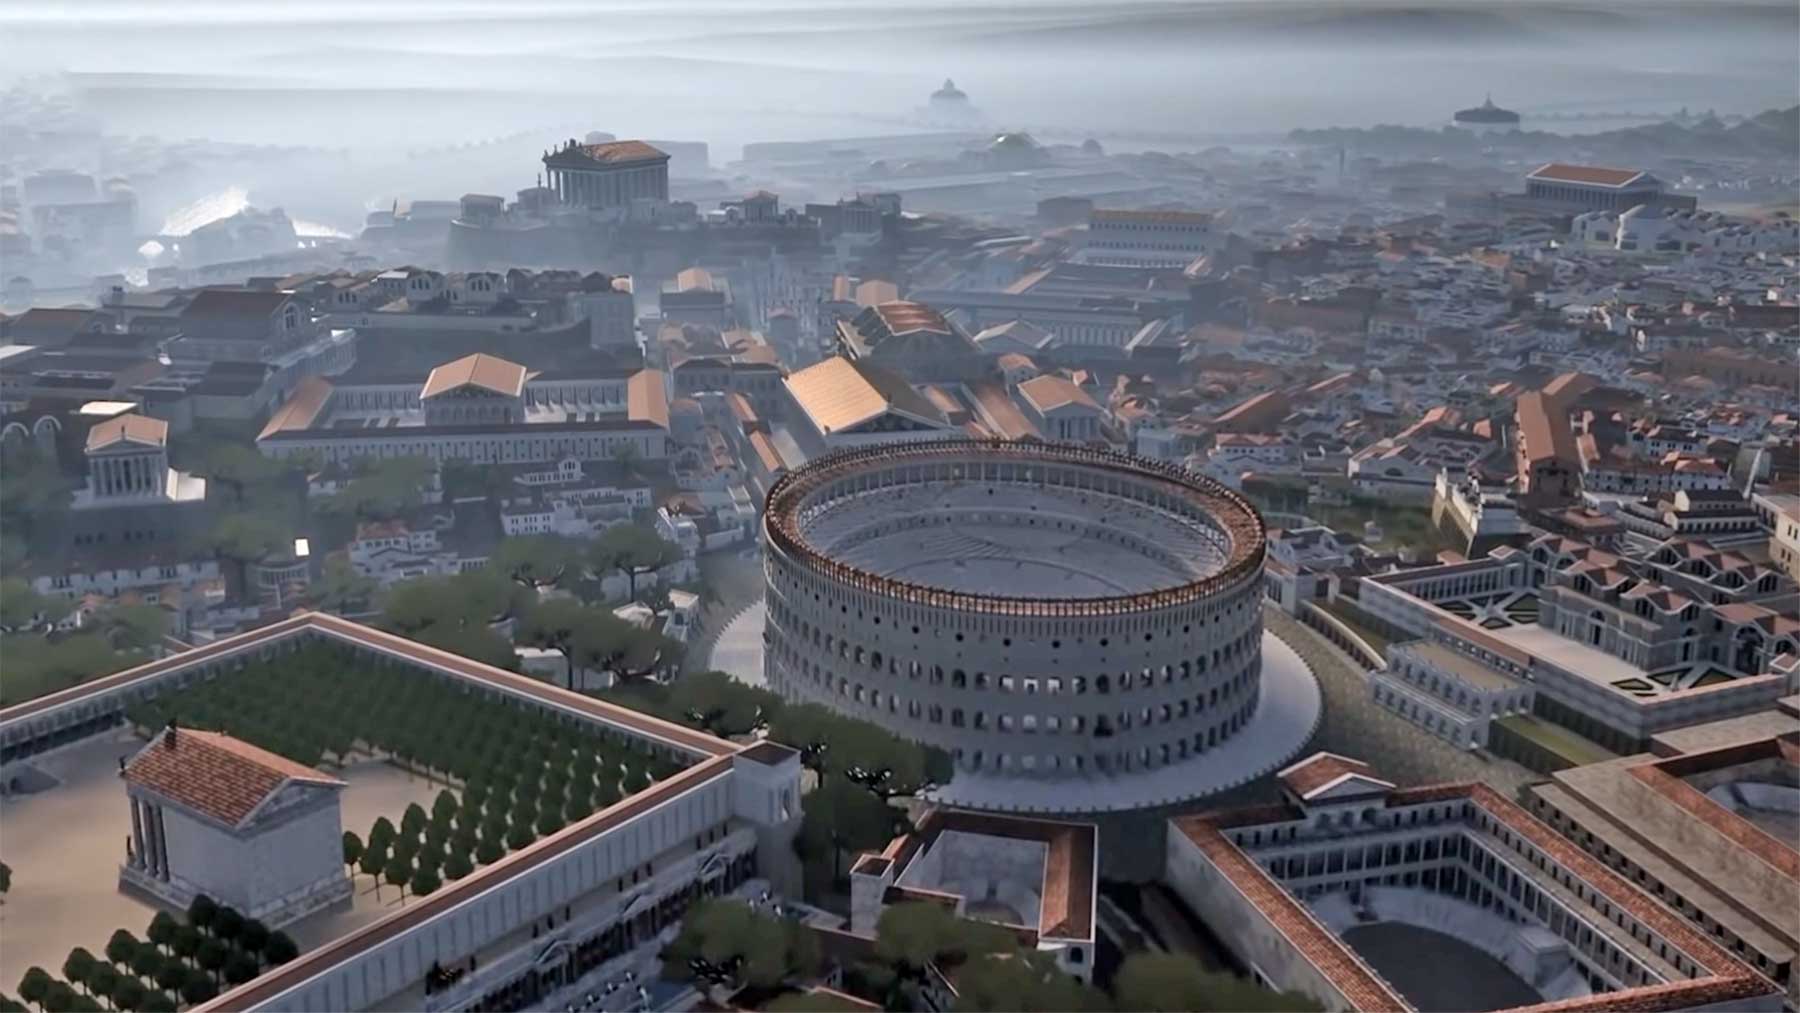 8-minütiger Flug über das antike Rom in 3D Antike-rom-in-3D-nachgebaut 